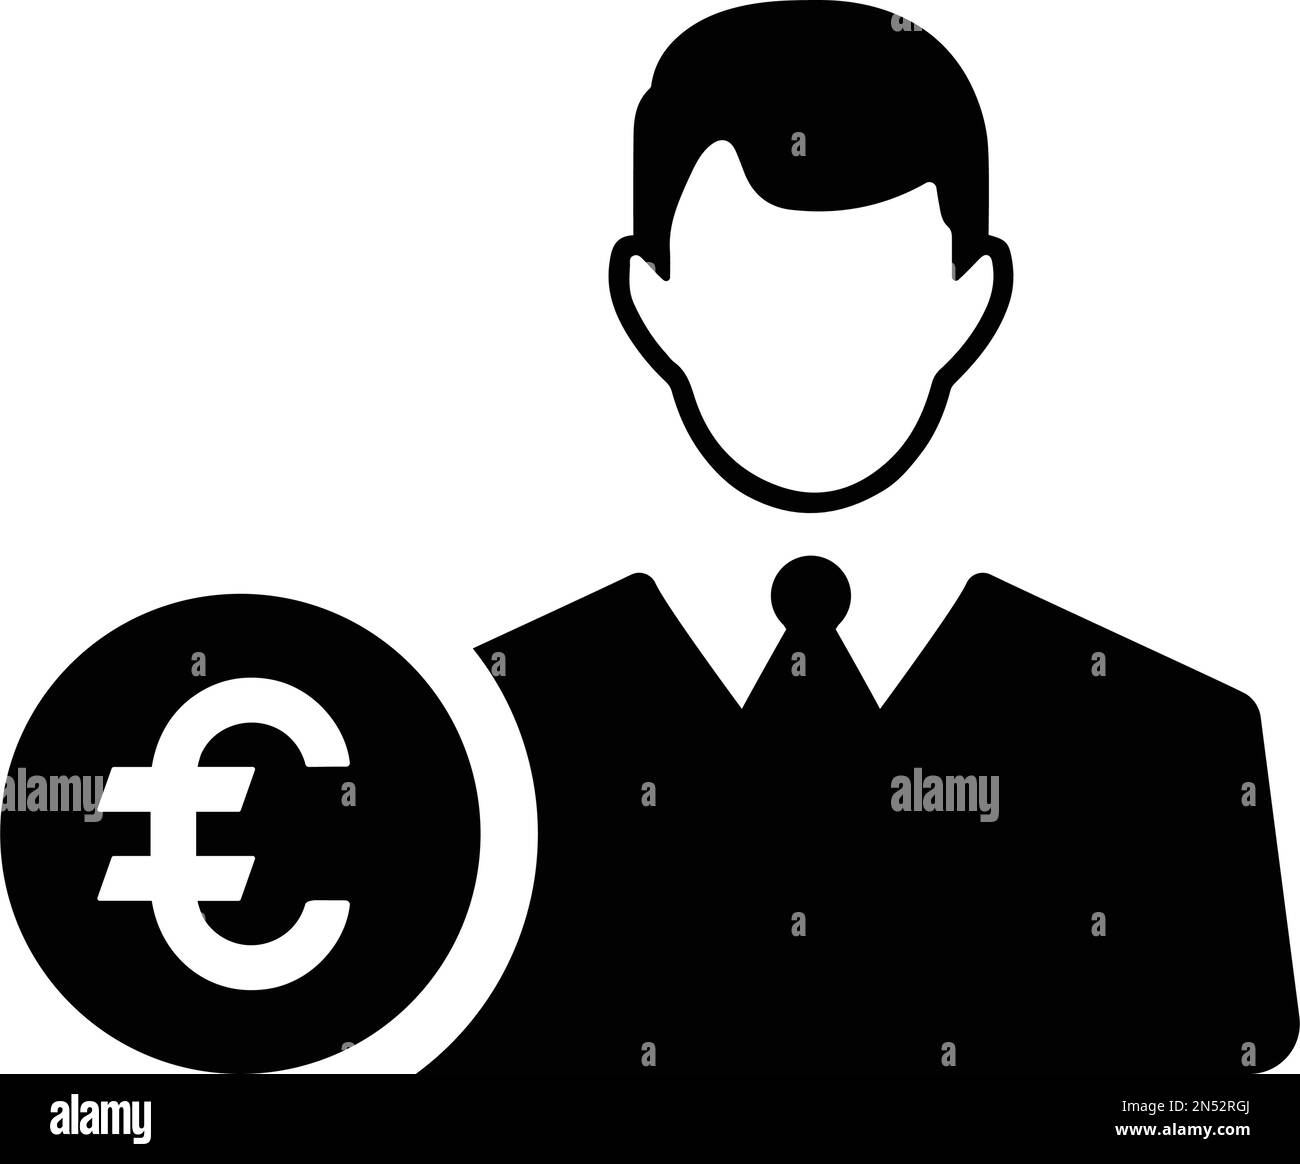 Banchiere, l'icona del finanziatore dell'euro è isolata su sfondo bianco. Utilizzo per grafica e web design o scopi commerciali. File EPS vettoriale. Illustrazione Vettoriale